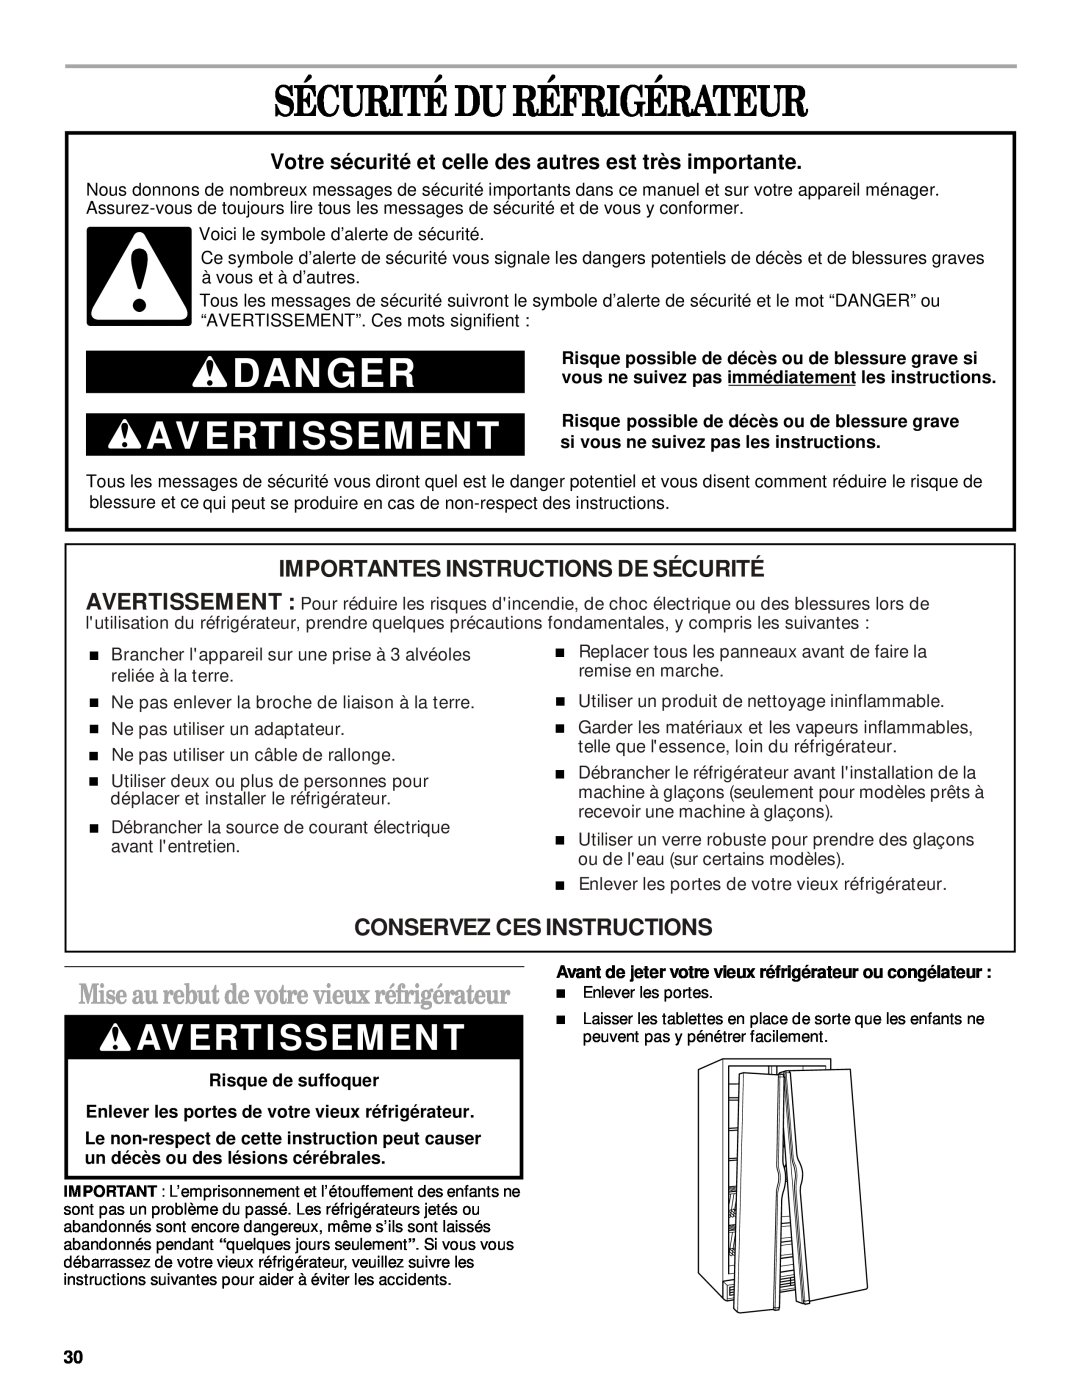 Whirlpool ED25LFXHT02 manual Sécurité Du Réfrigérateur, Avertissement, Mise au rebut de votre vieux réfrigérateur, Danger 